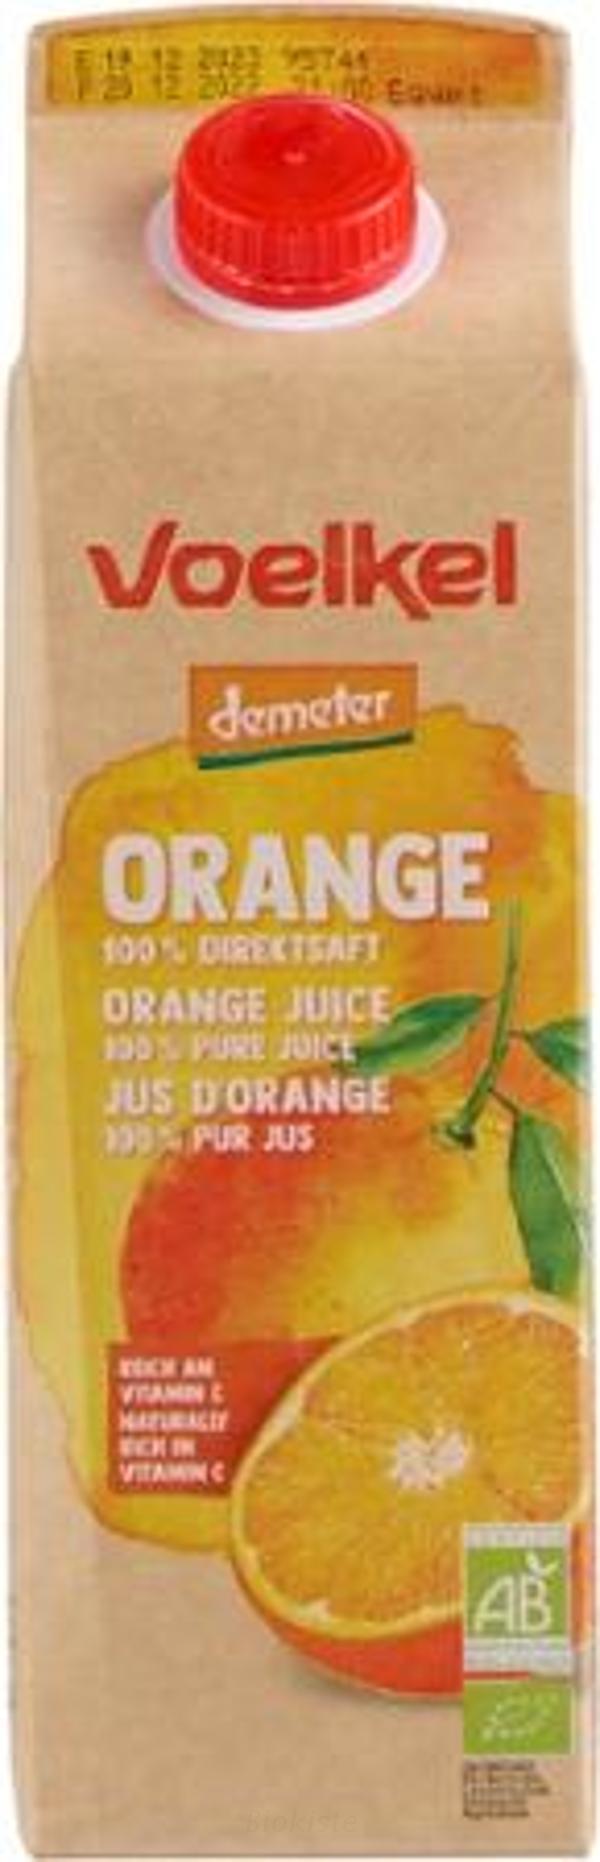 Produktfoto zu Orangensaft Elo 6-Pack 1L